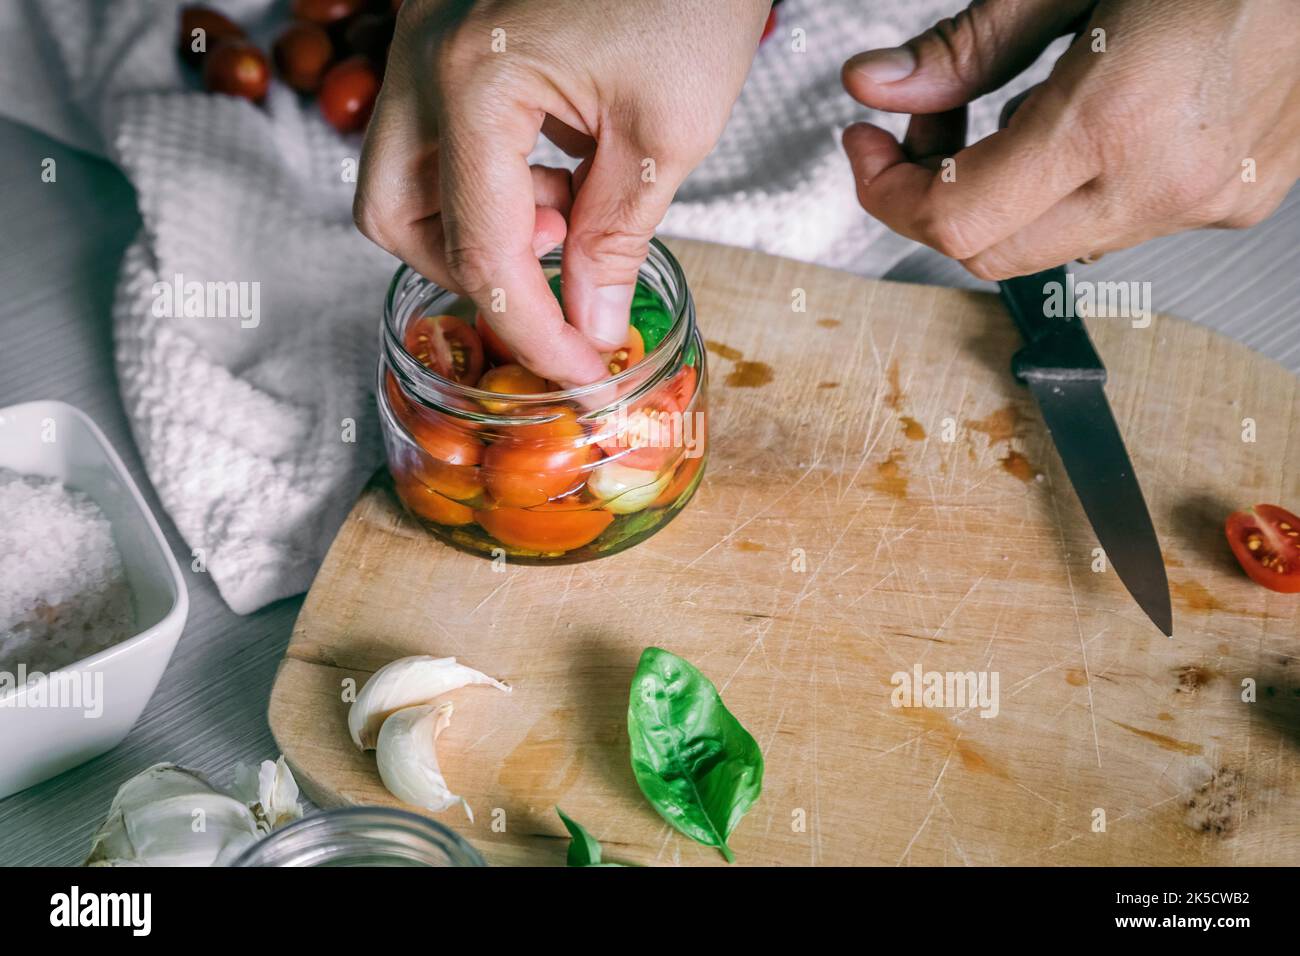 preparación casera, tomates en aceite con ajo, albahaca Foto de stock